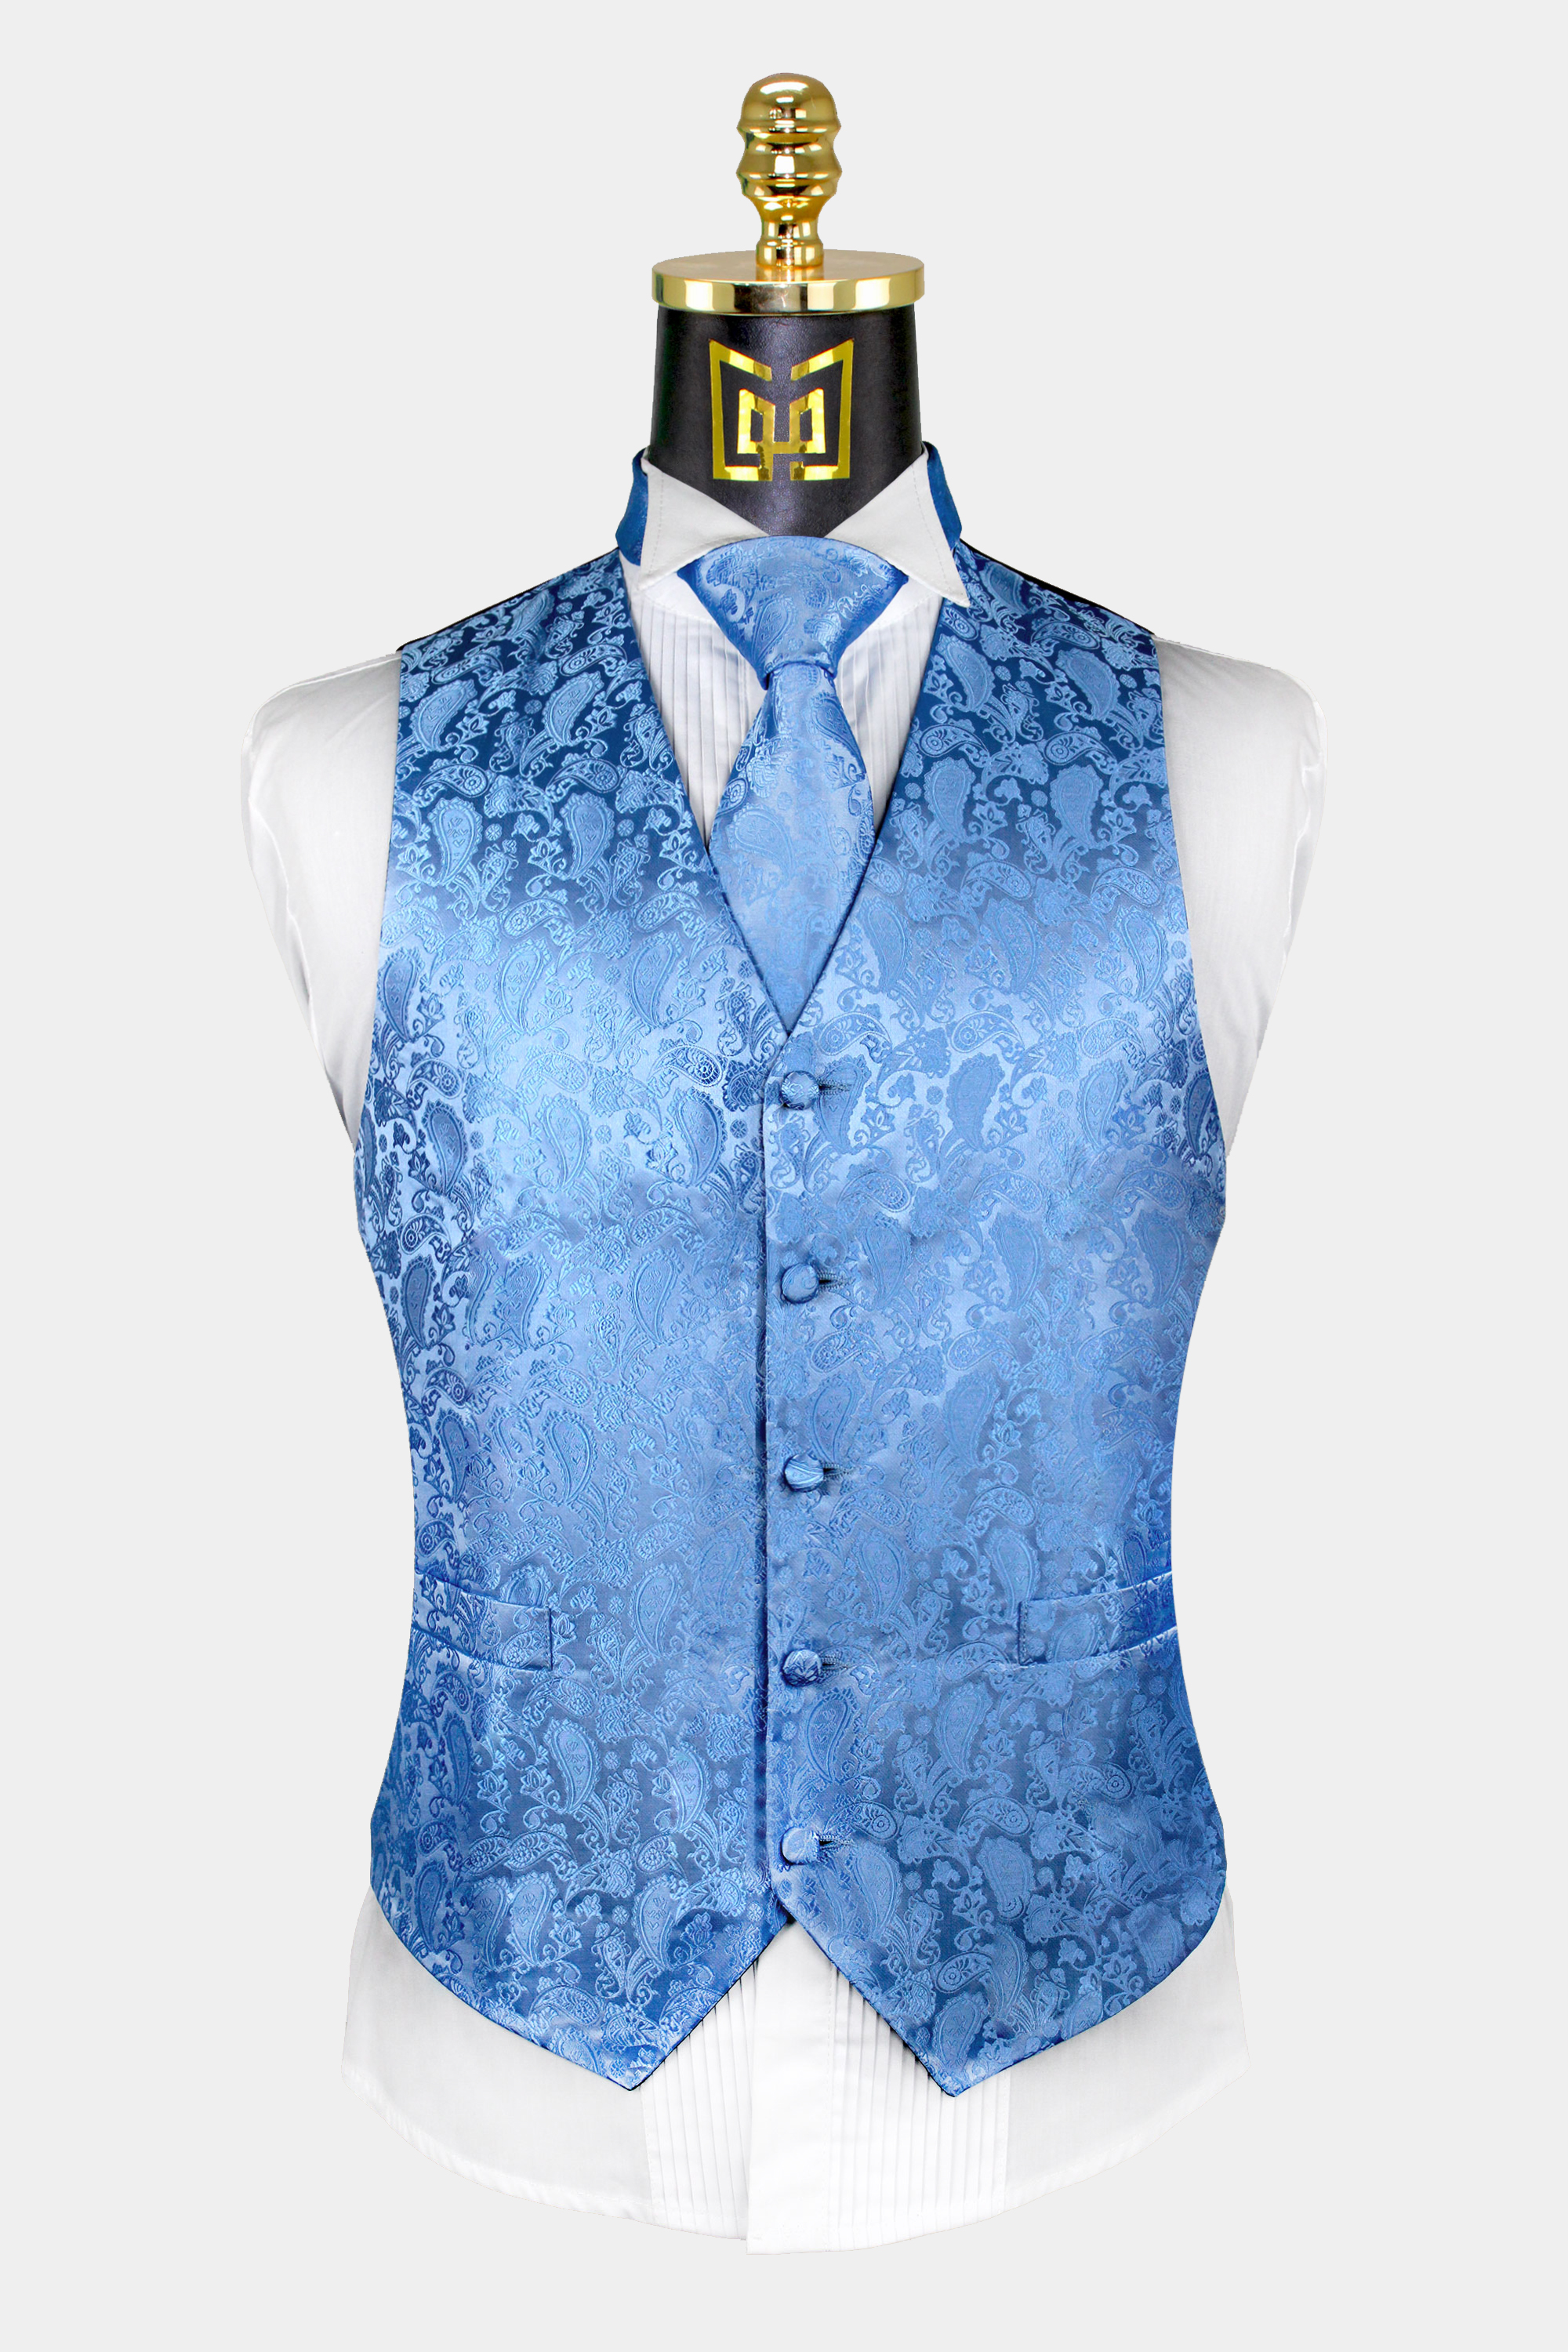 Light Blue Paisley Vest & Tie Set - 3 Piece